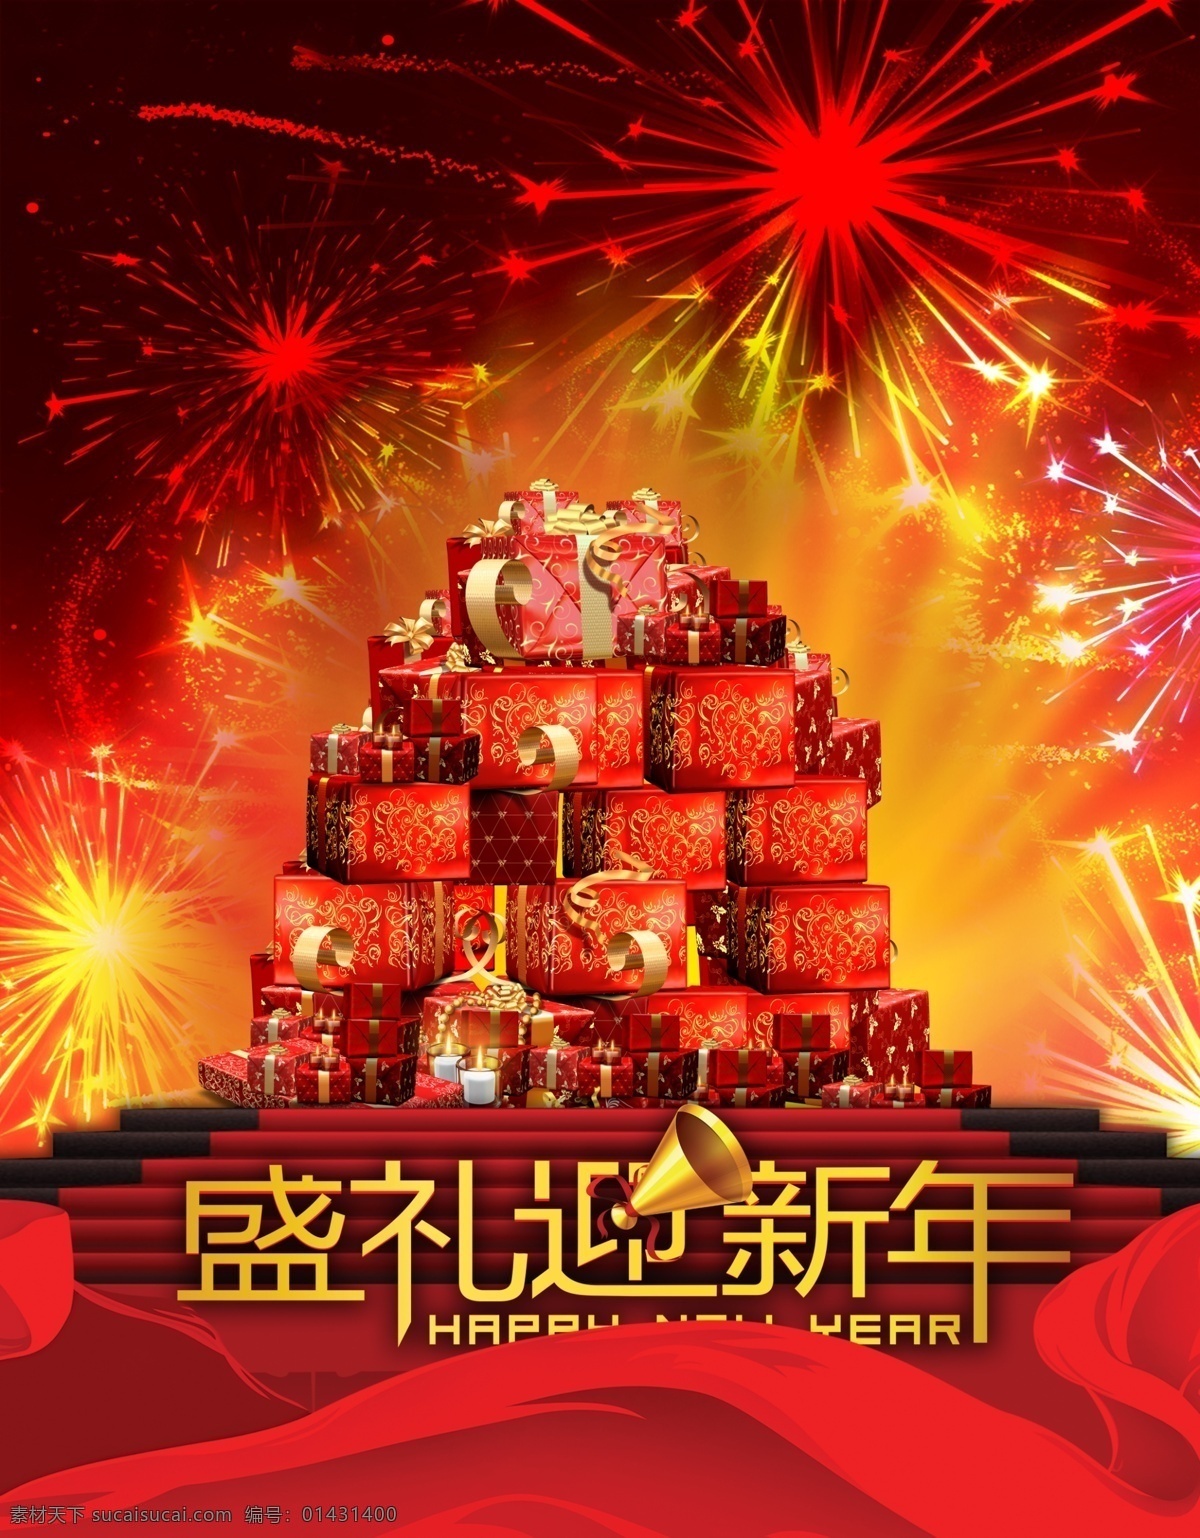 盛礼迎新年 礼品 大堆礼品 盒子 烟花 闪光 红色丝绸 楼梯 喇叭 广告设计模板 源文件